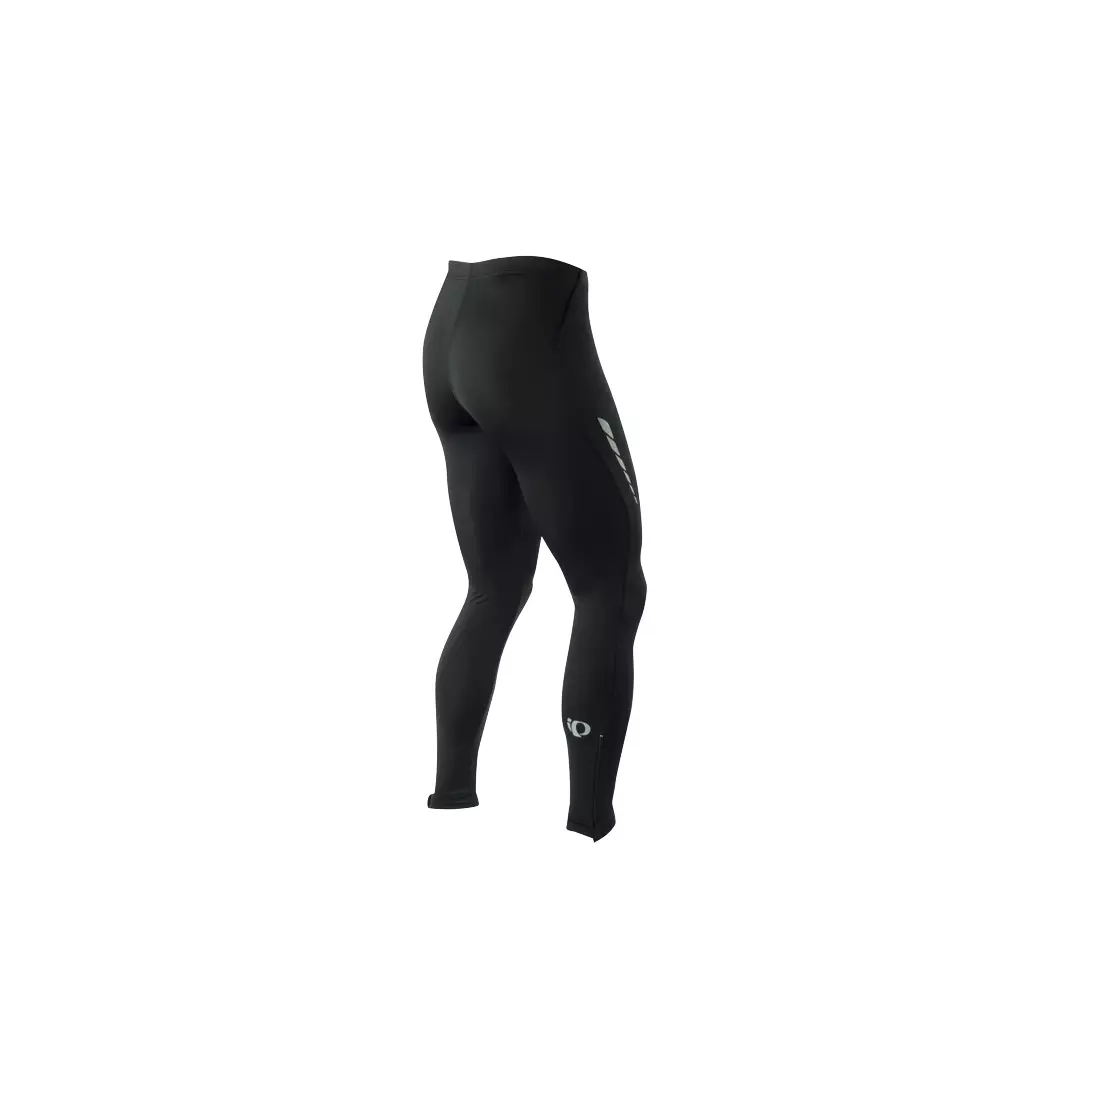 PEARL IZUMI - SELECT Tight 12111018-021 - férfi nadrág nadrágtartó nélkül, szín: Fekete